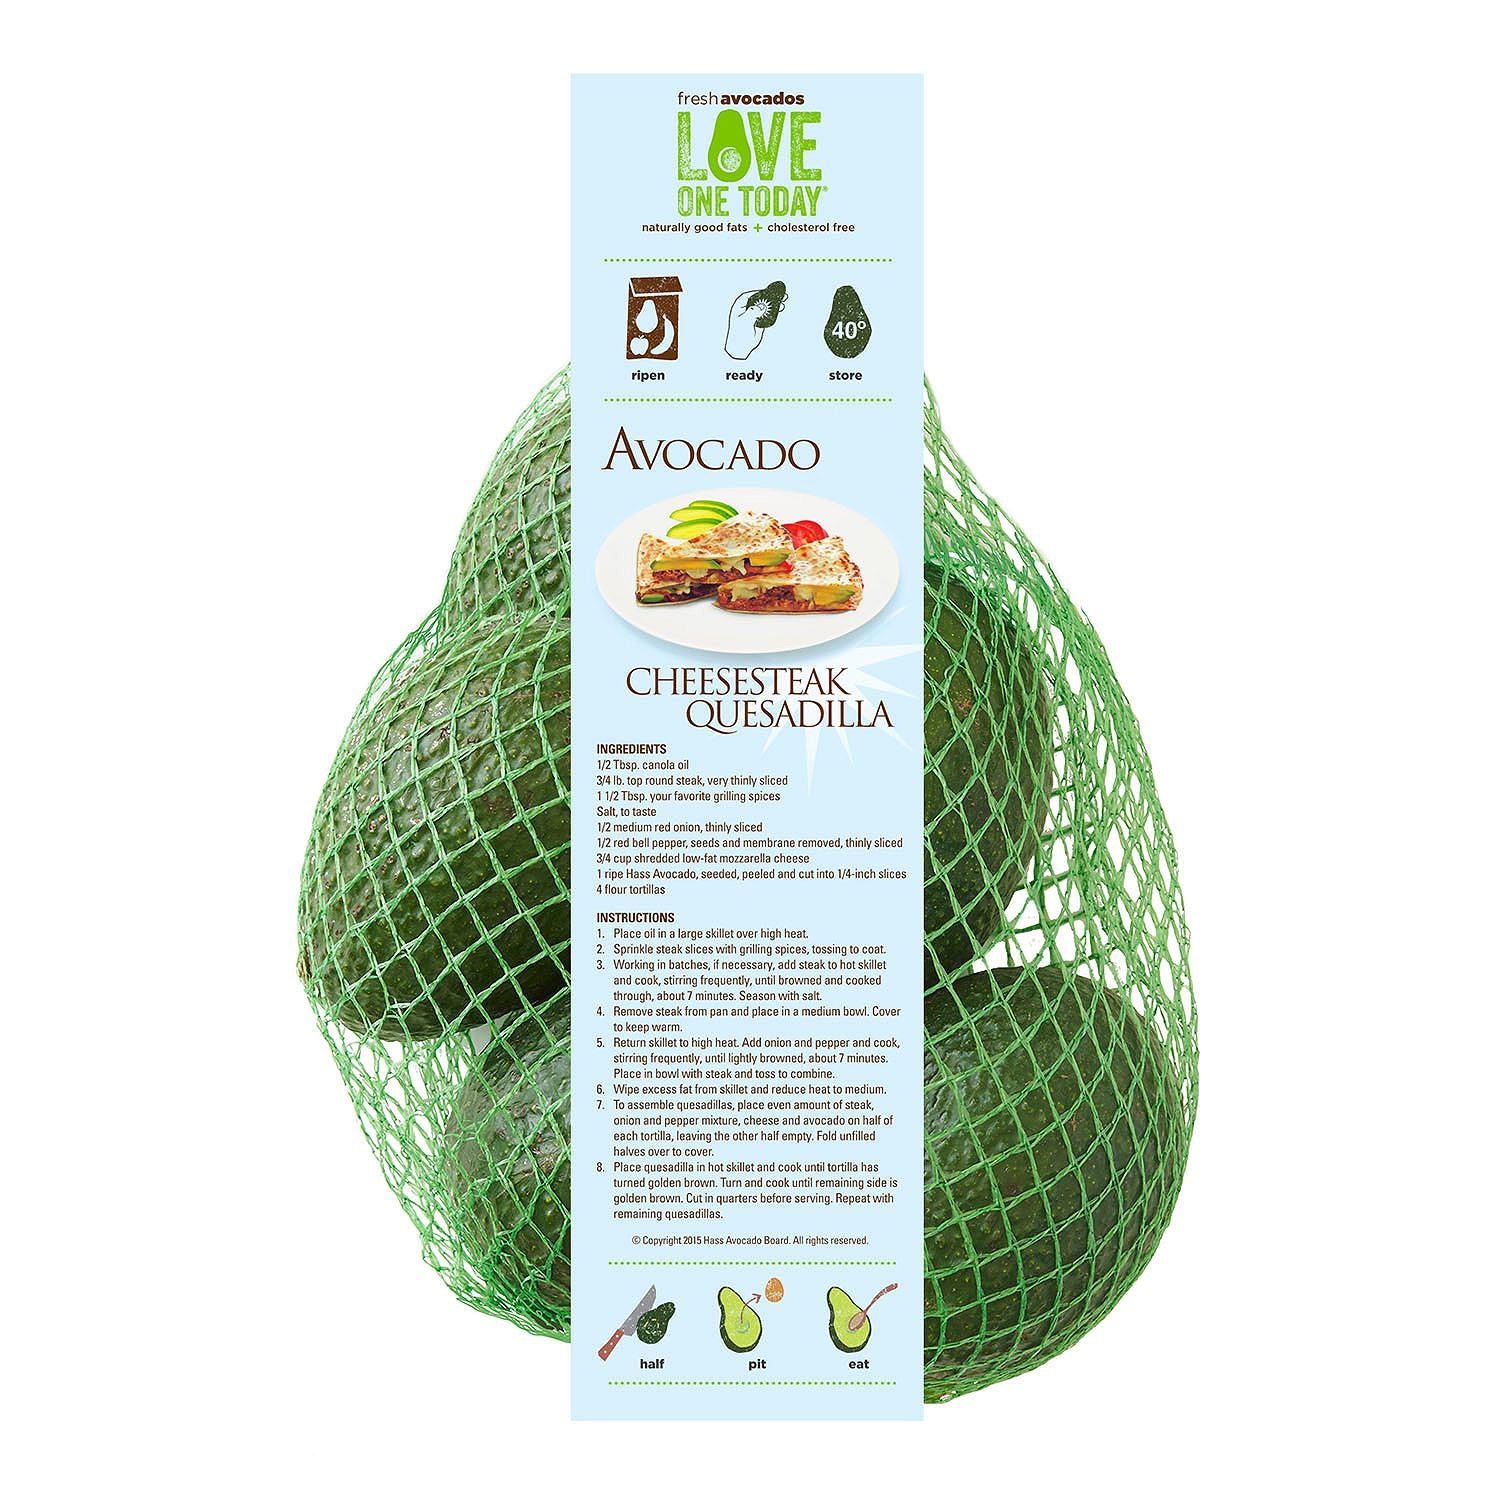 Avocado cups - Goverden - 2 lb